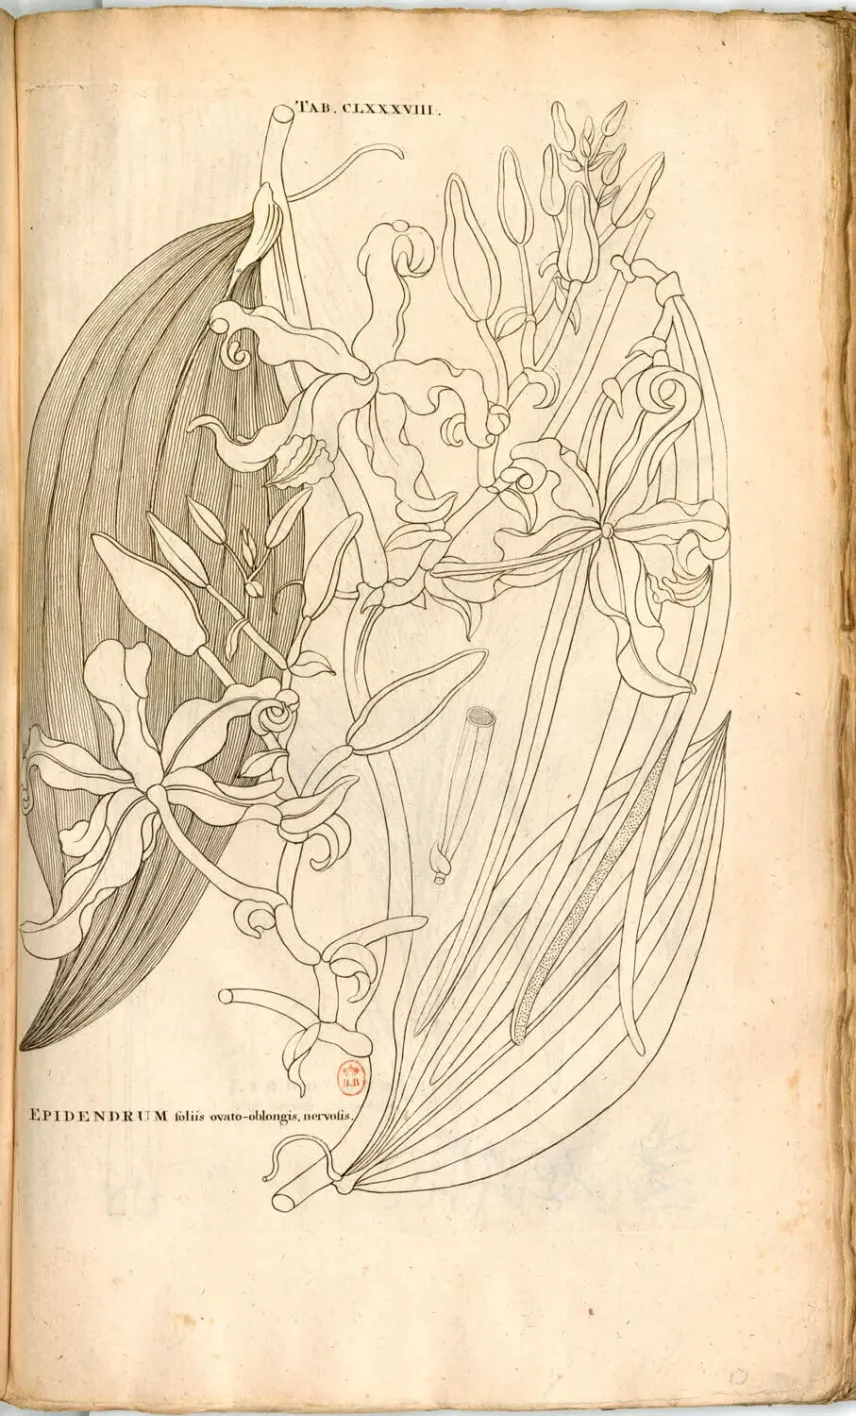 <em>Epidendrum vanilla</em> L., gravure de Johannes Burman d’après Charles Plumier.